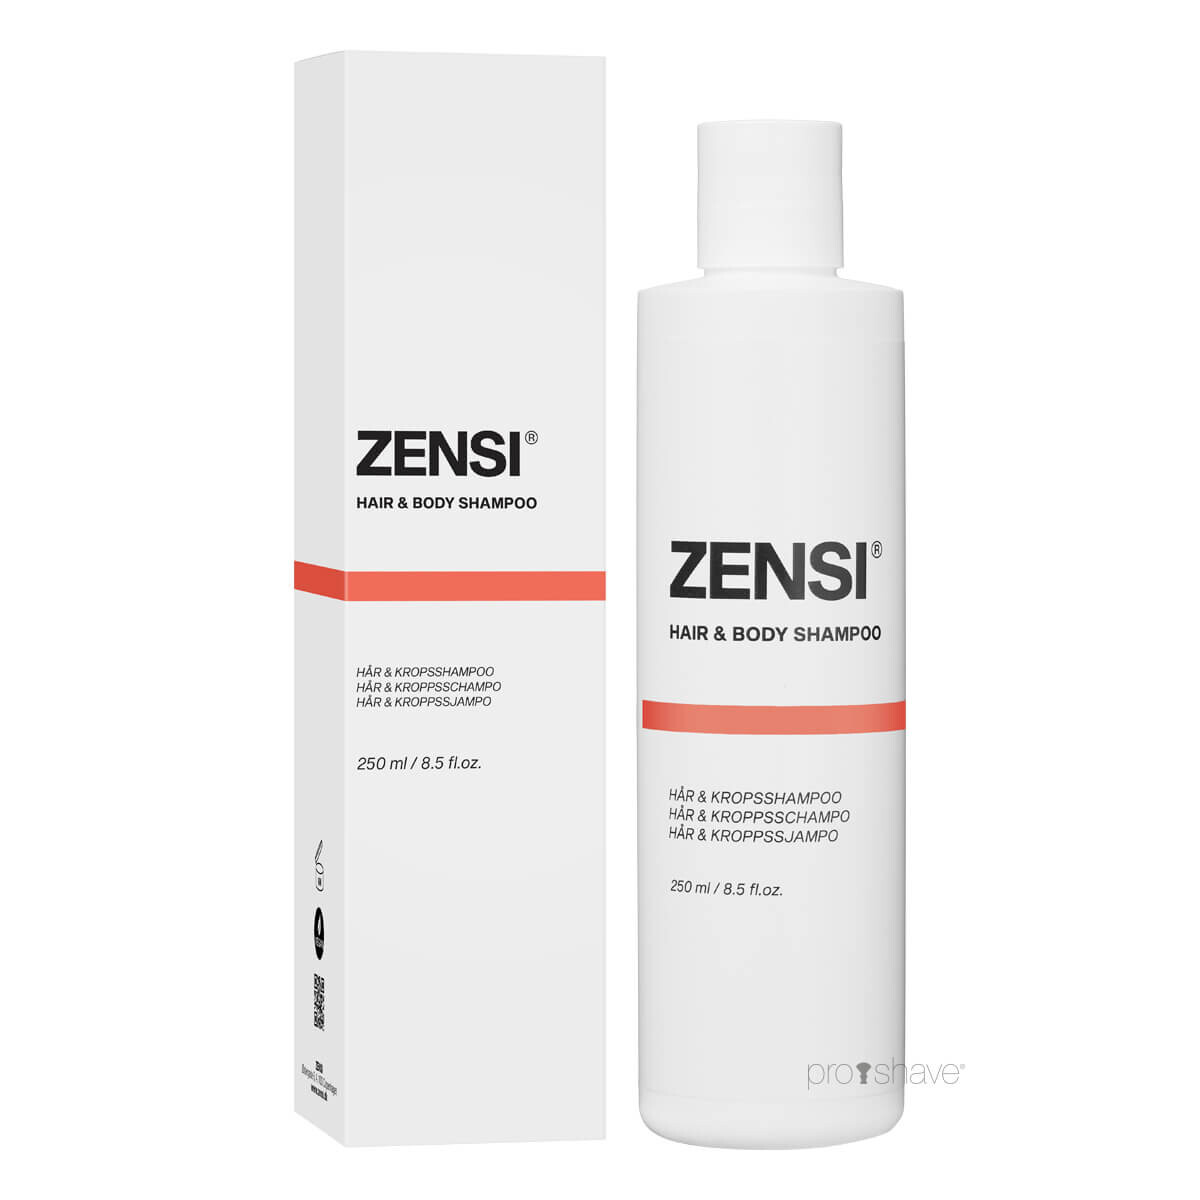 Billede af ZENSI Hair & Body Shampoo, 250 ml. hos Proshave